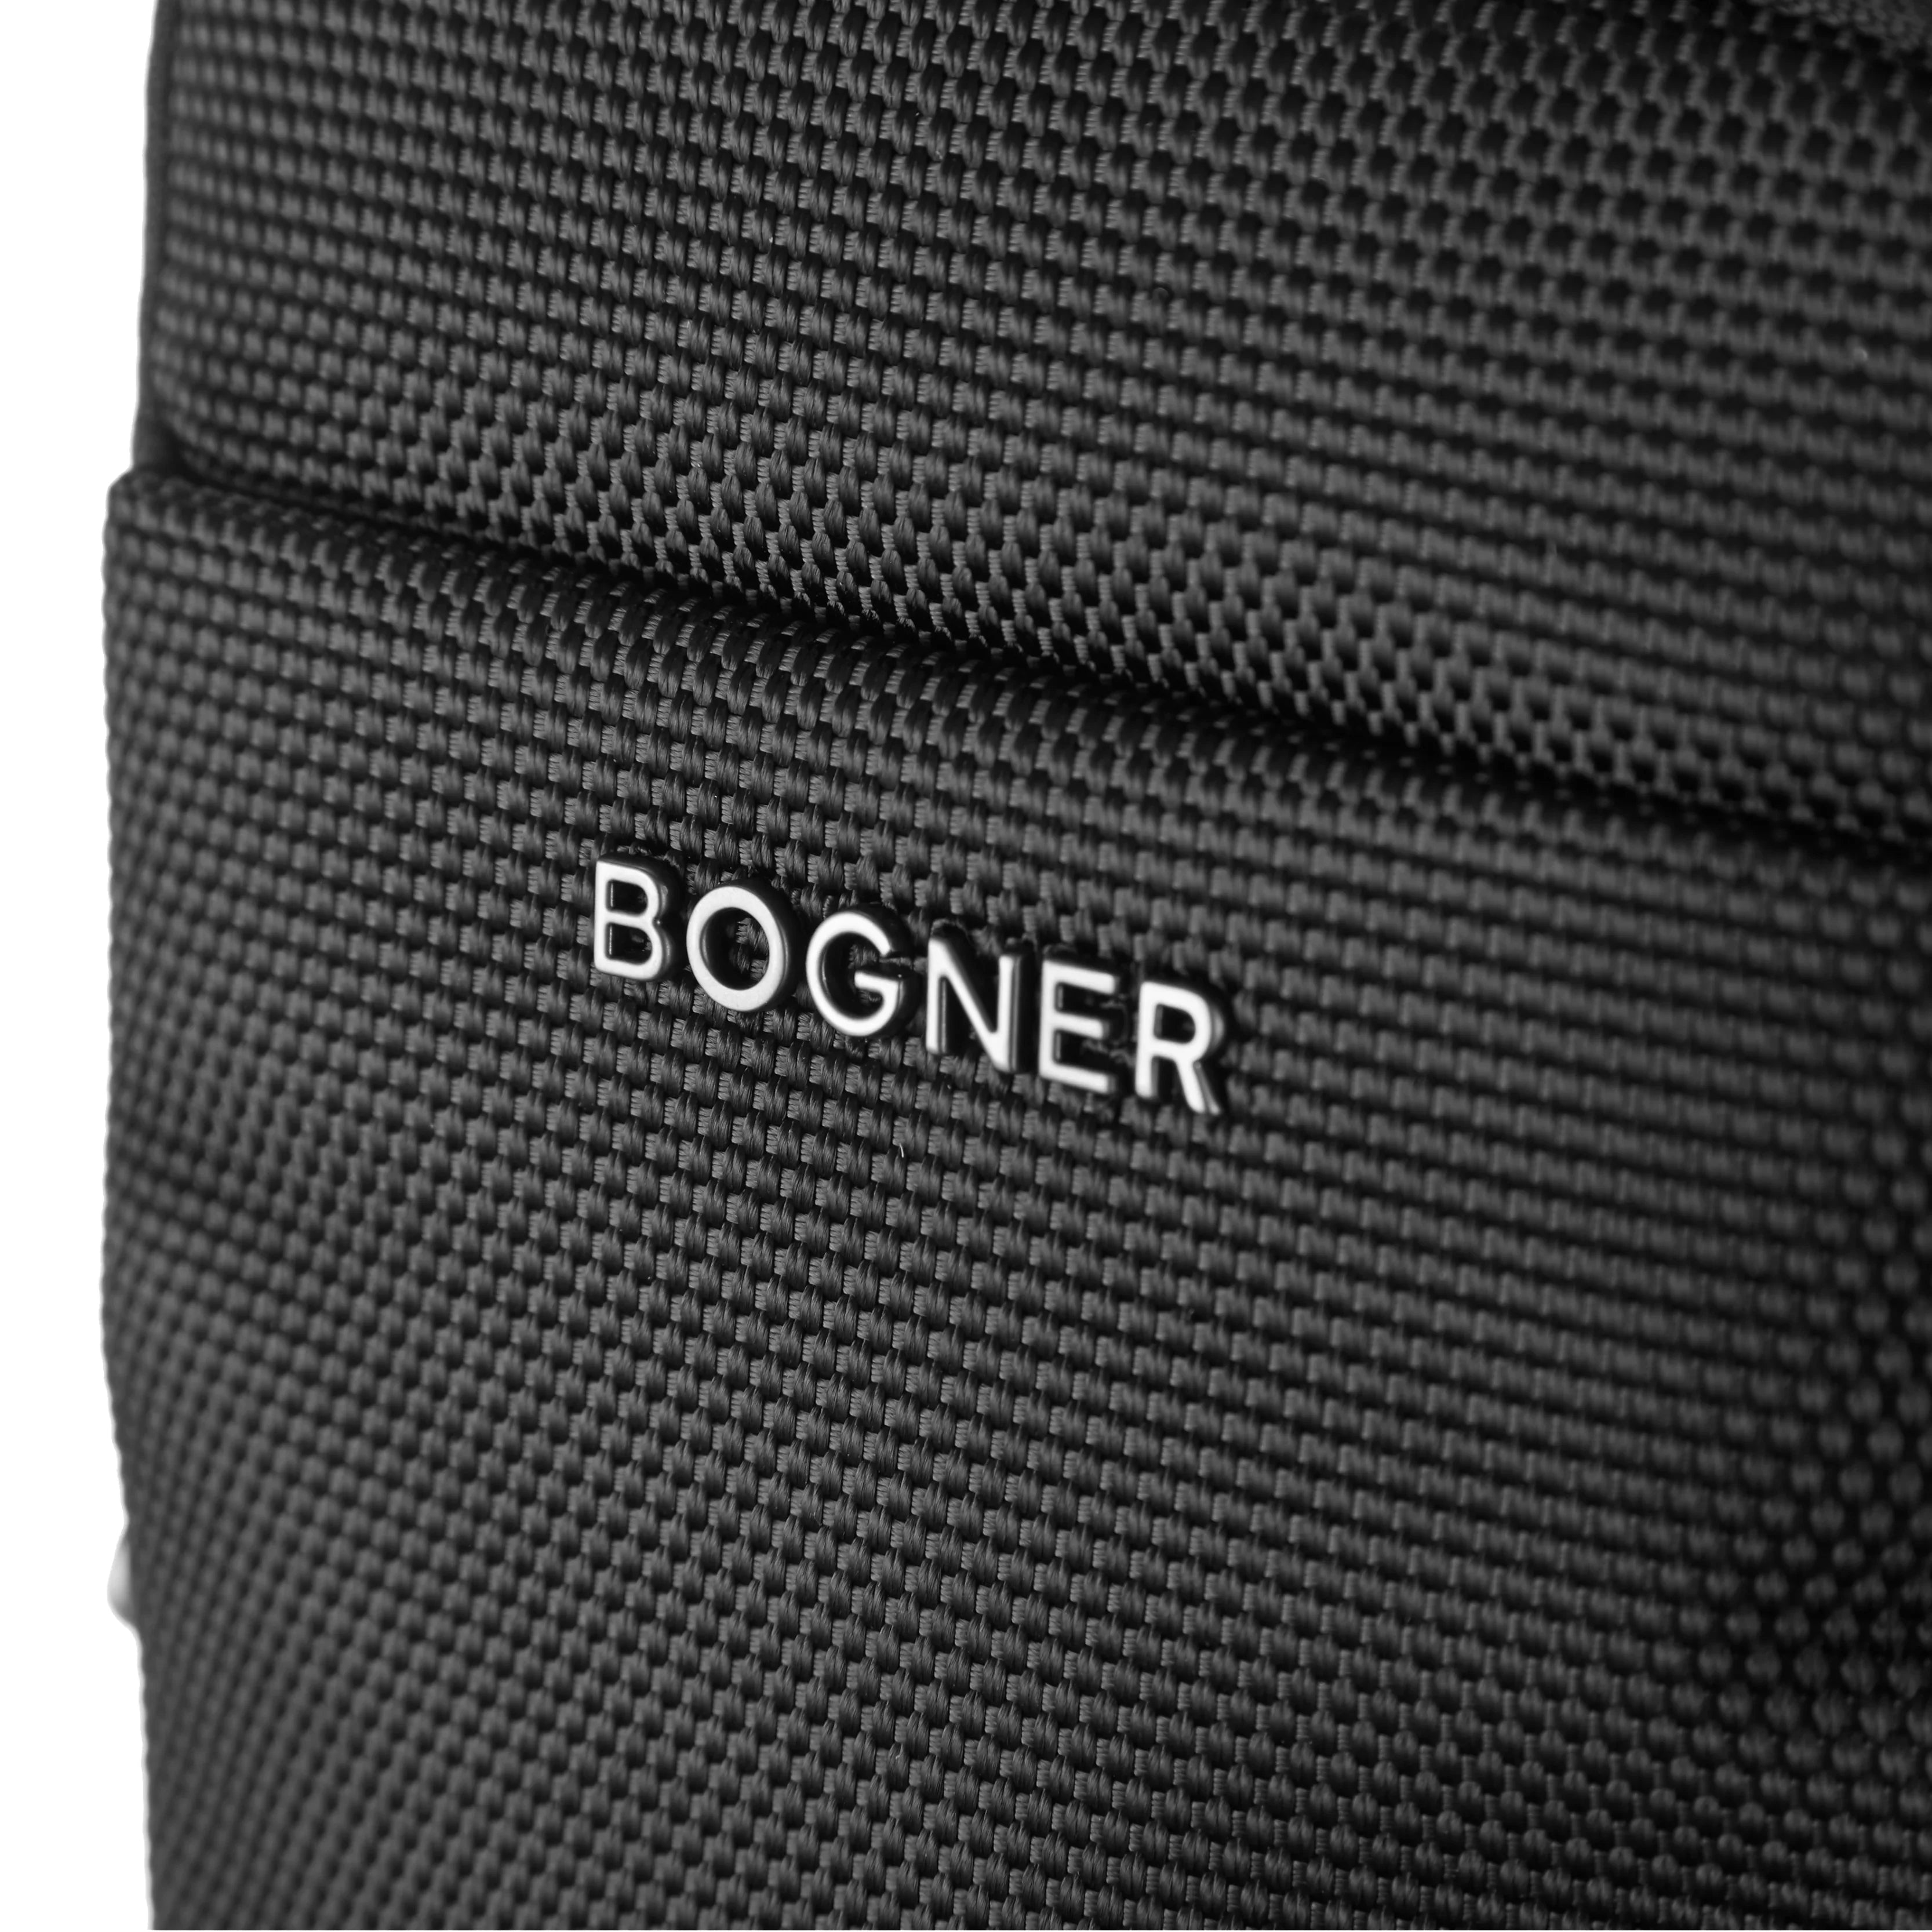 Bogner Keystone Frank Shoulderbag XSVZ 19 cm - Black